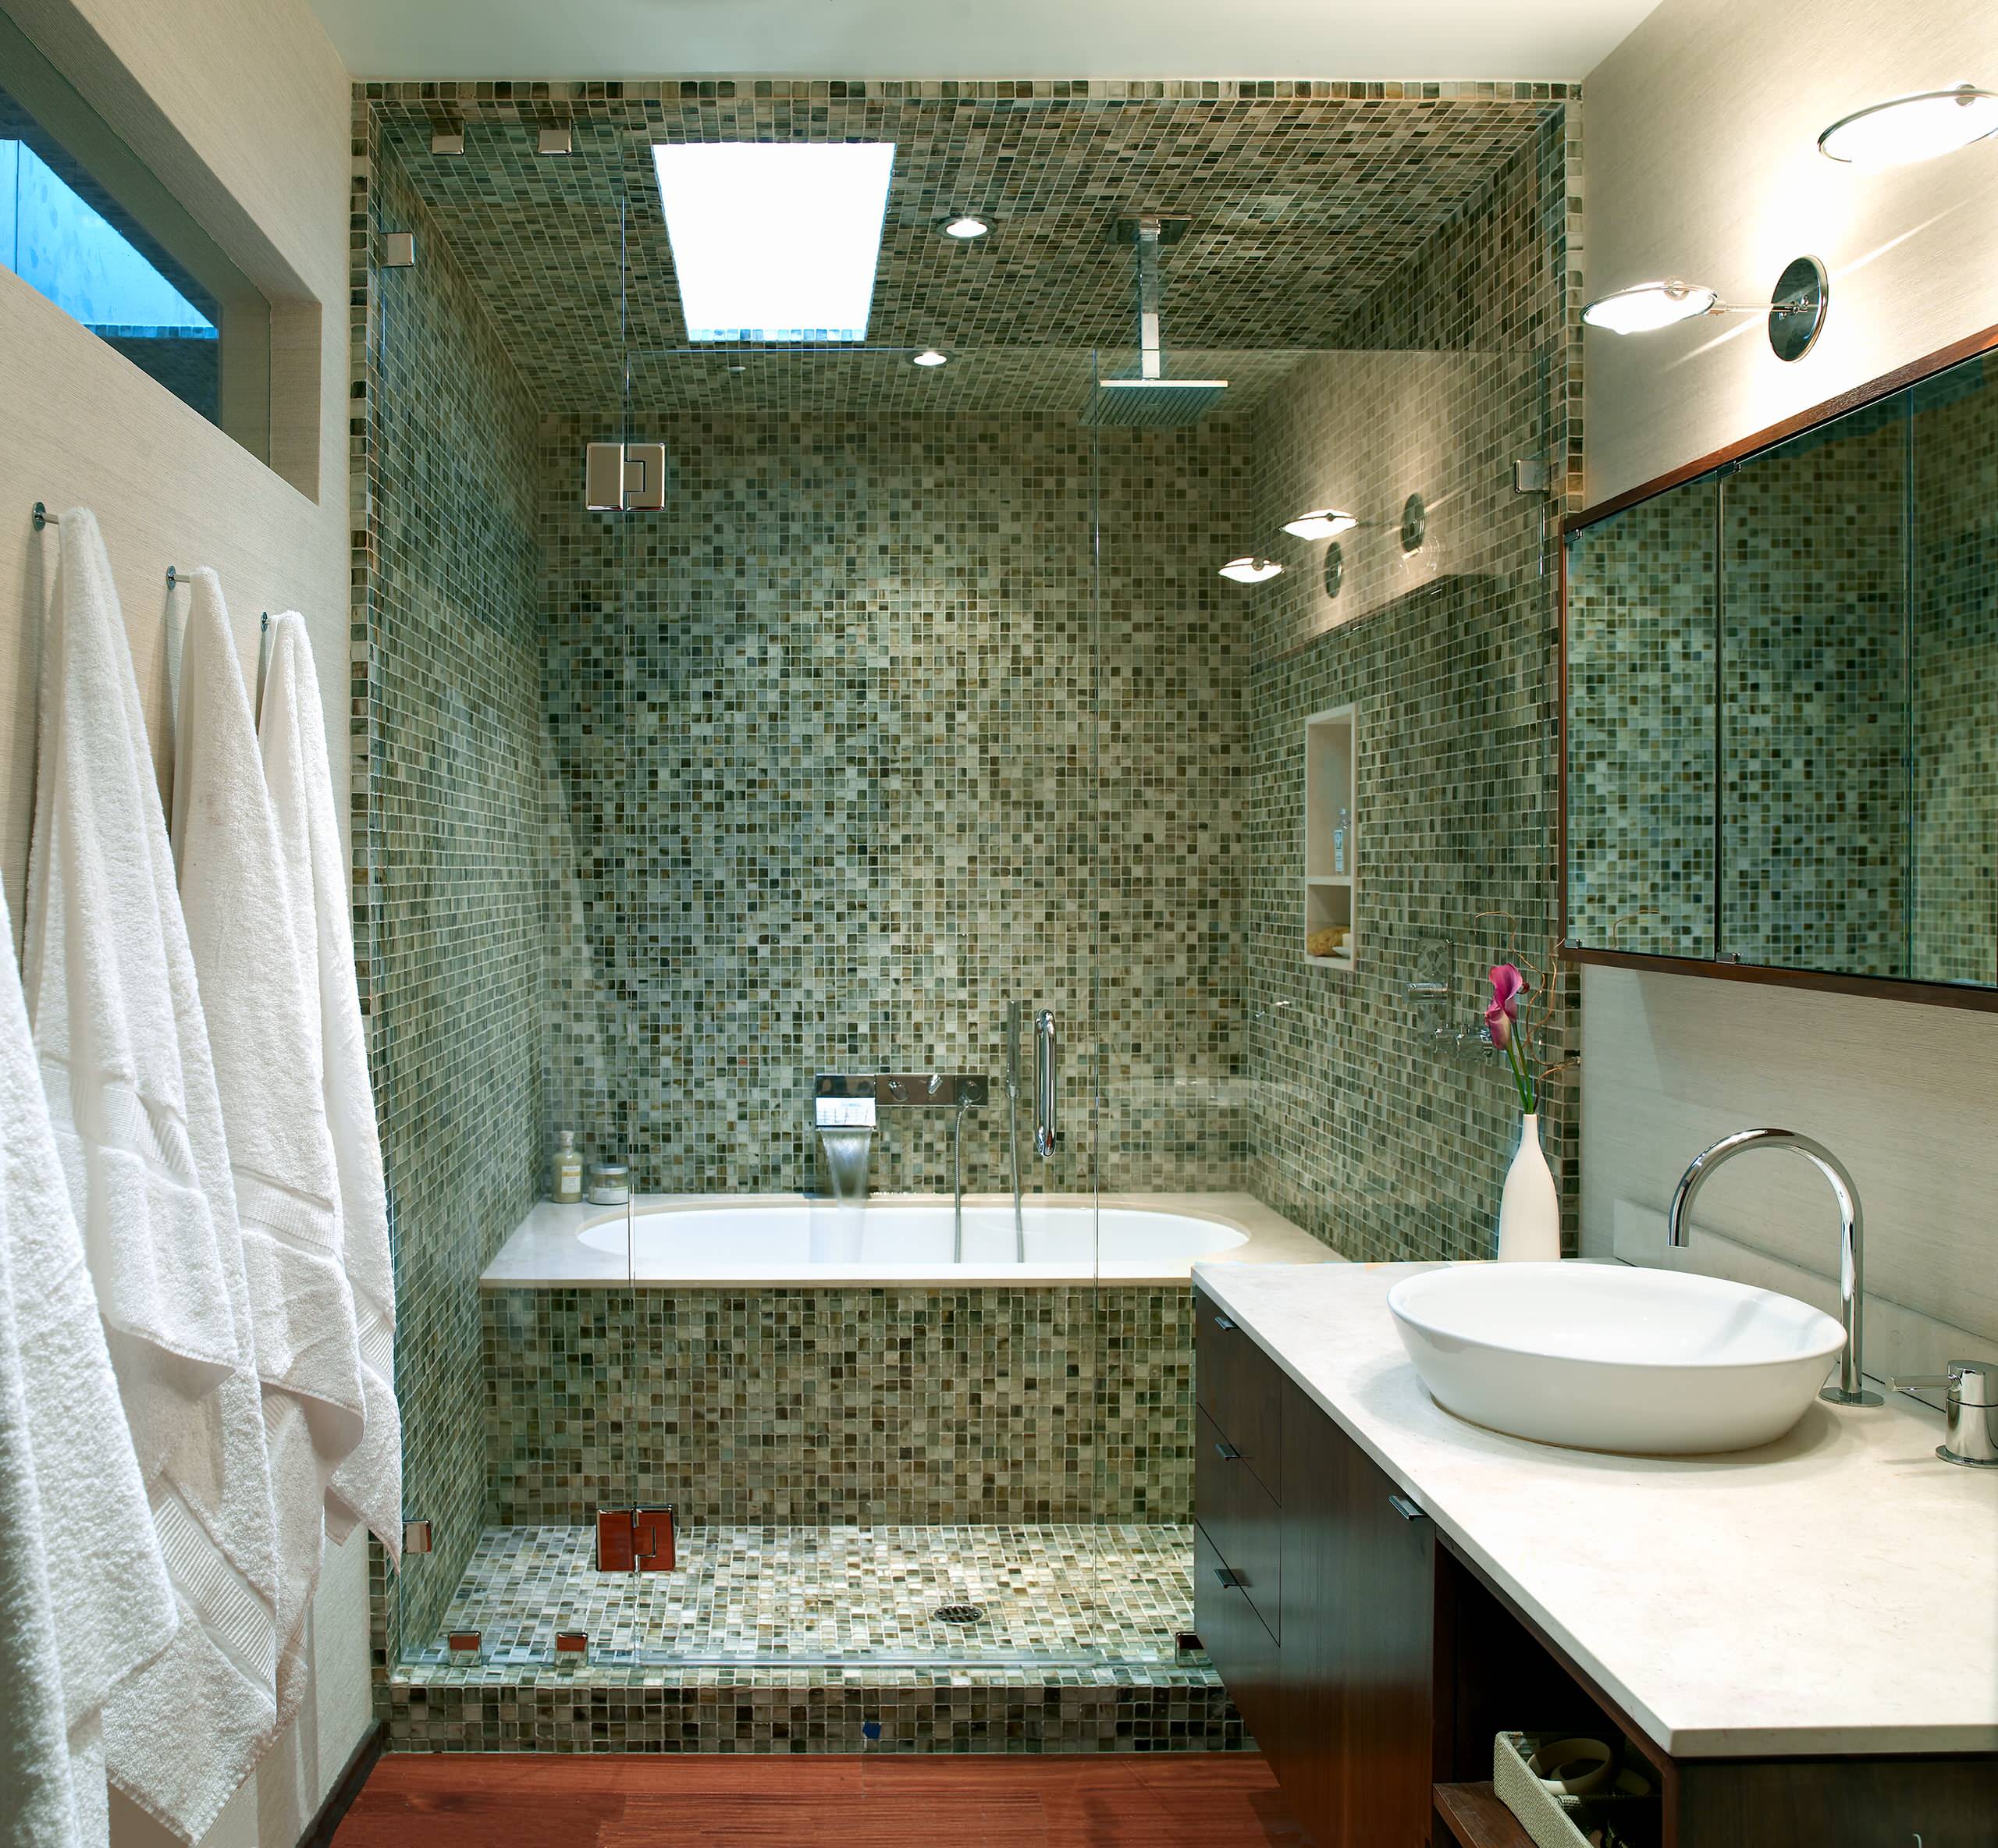 Как сделать дизайн ванной. Отделка ванной комнаты мозаикой. Мозаика в маленькой ванной комнате. Ванная отделанная мозаикой. Ванная комната отделанная мозаикой.